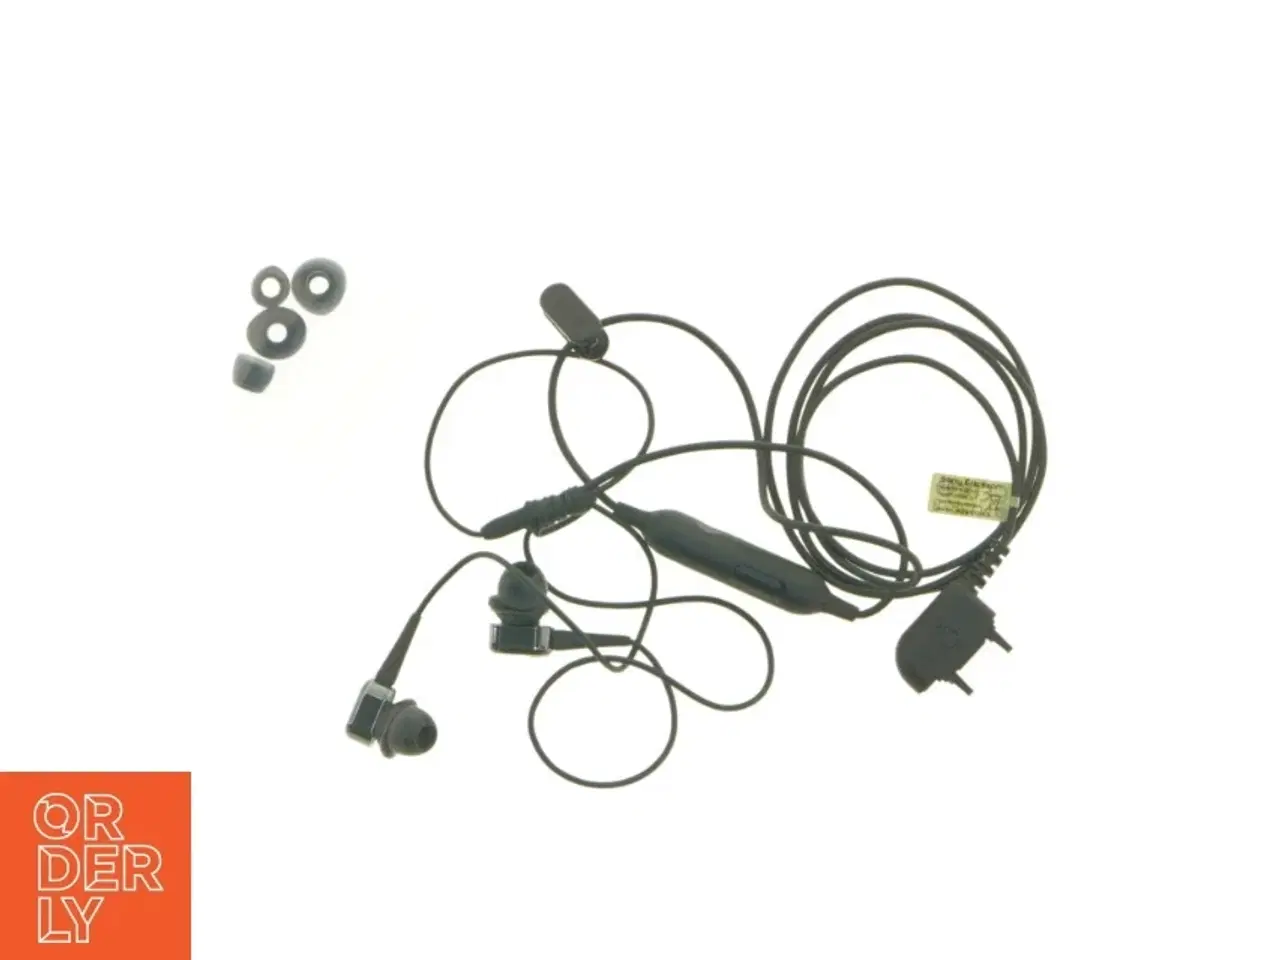 Billede 1 - In-ear øretelefoner fra Sony Ericsson (retro)